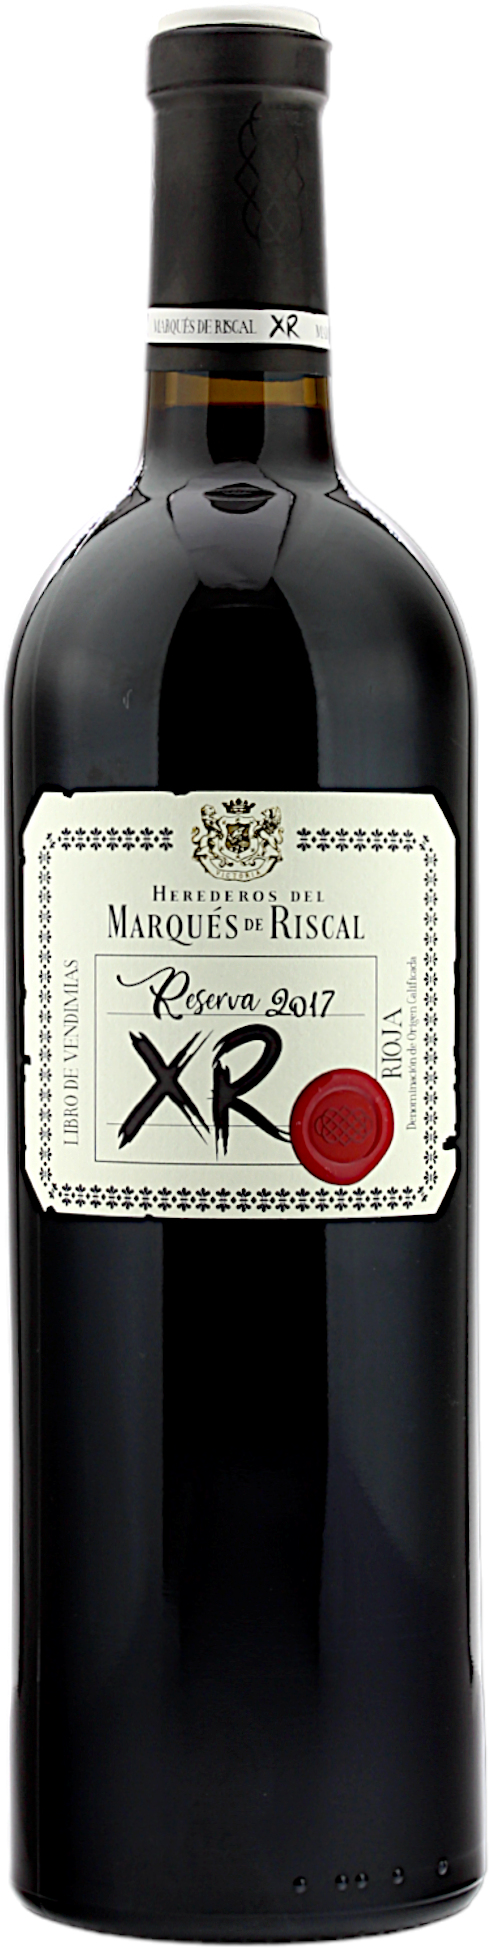 Marqués de Riscal 2017 Rioja XR DOC Reserva La